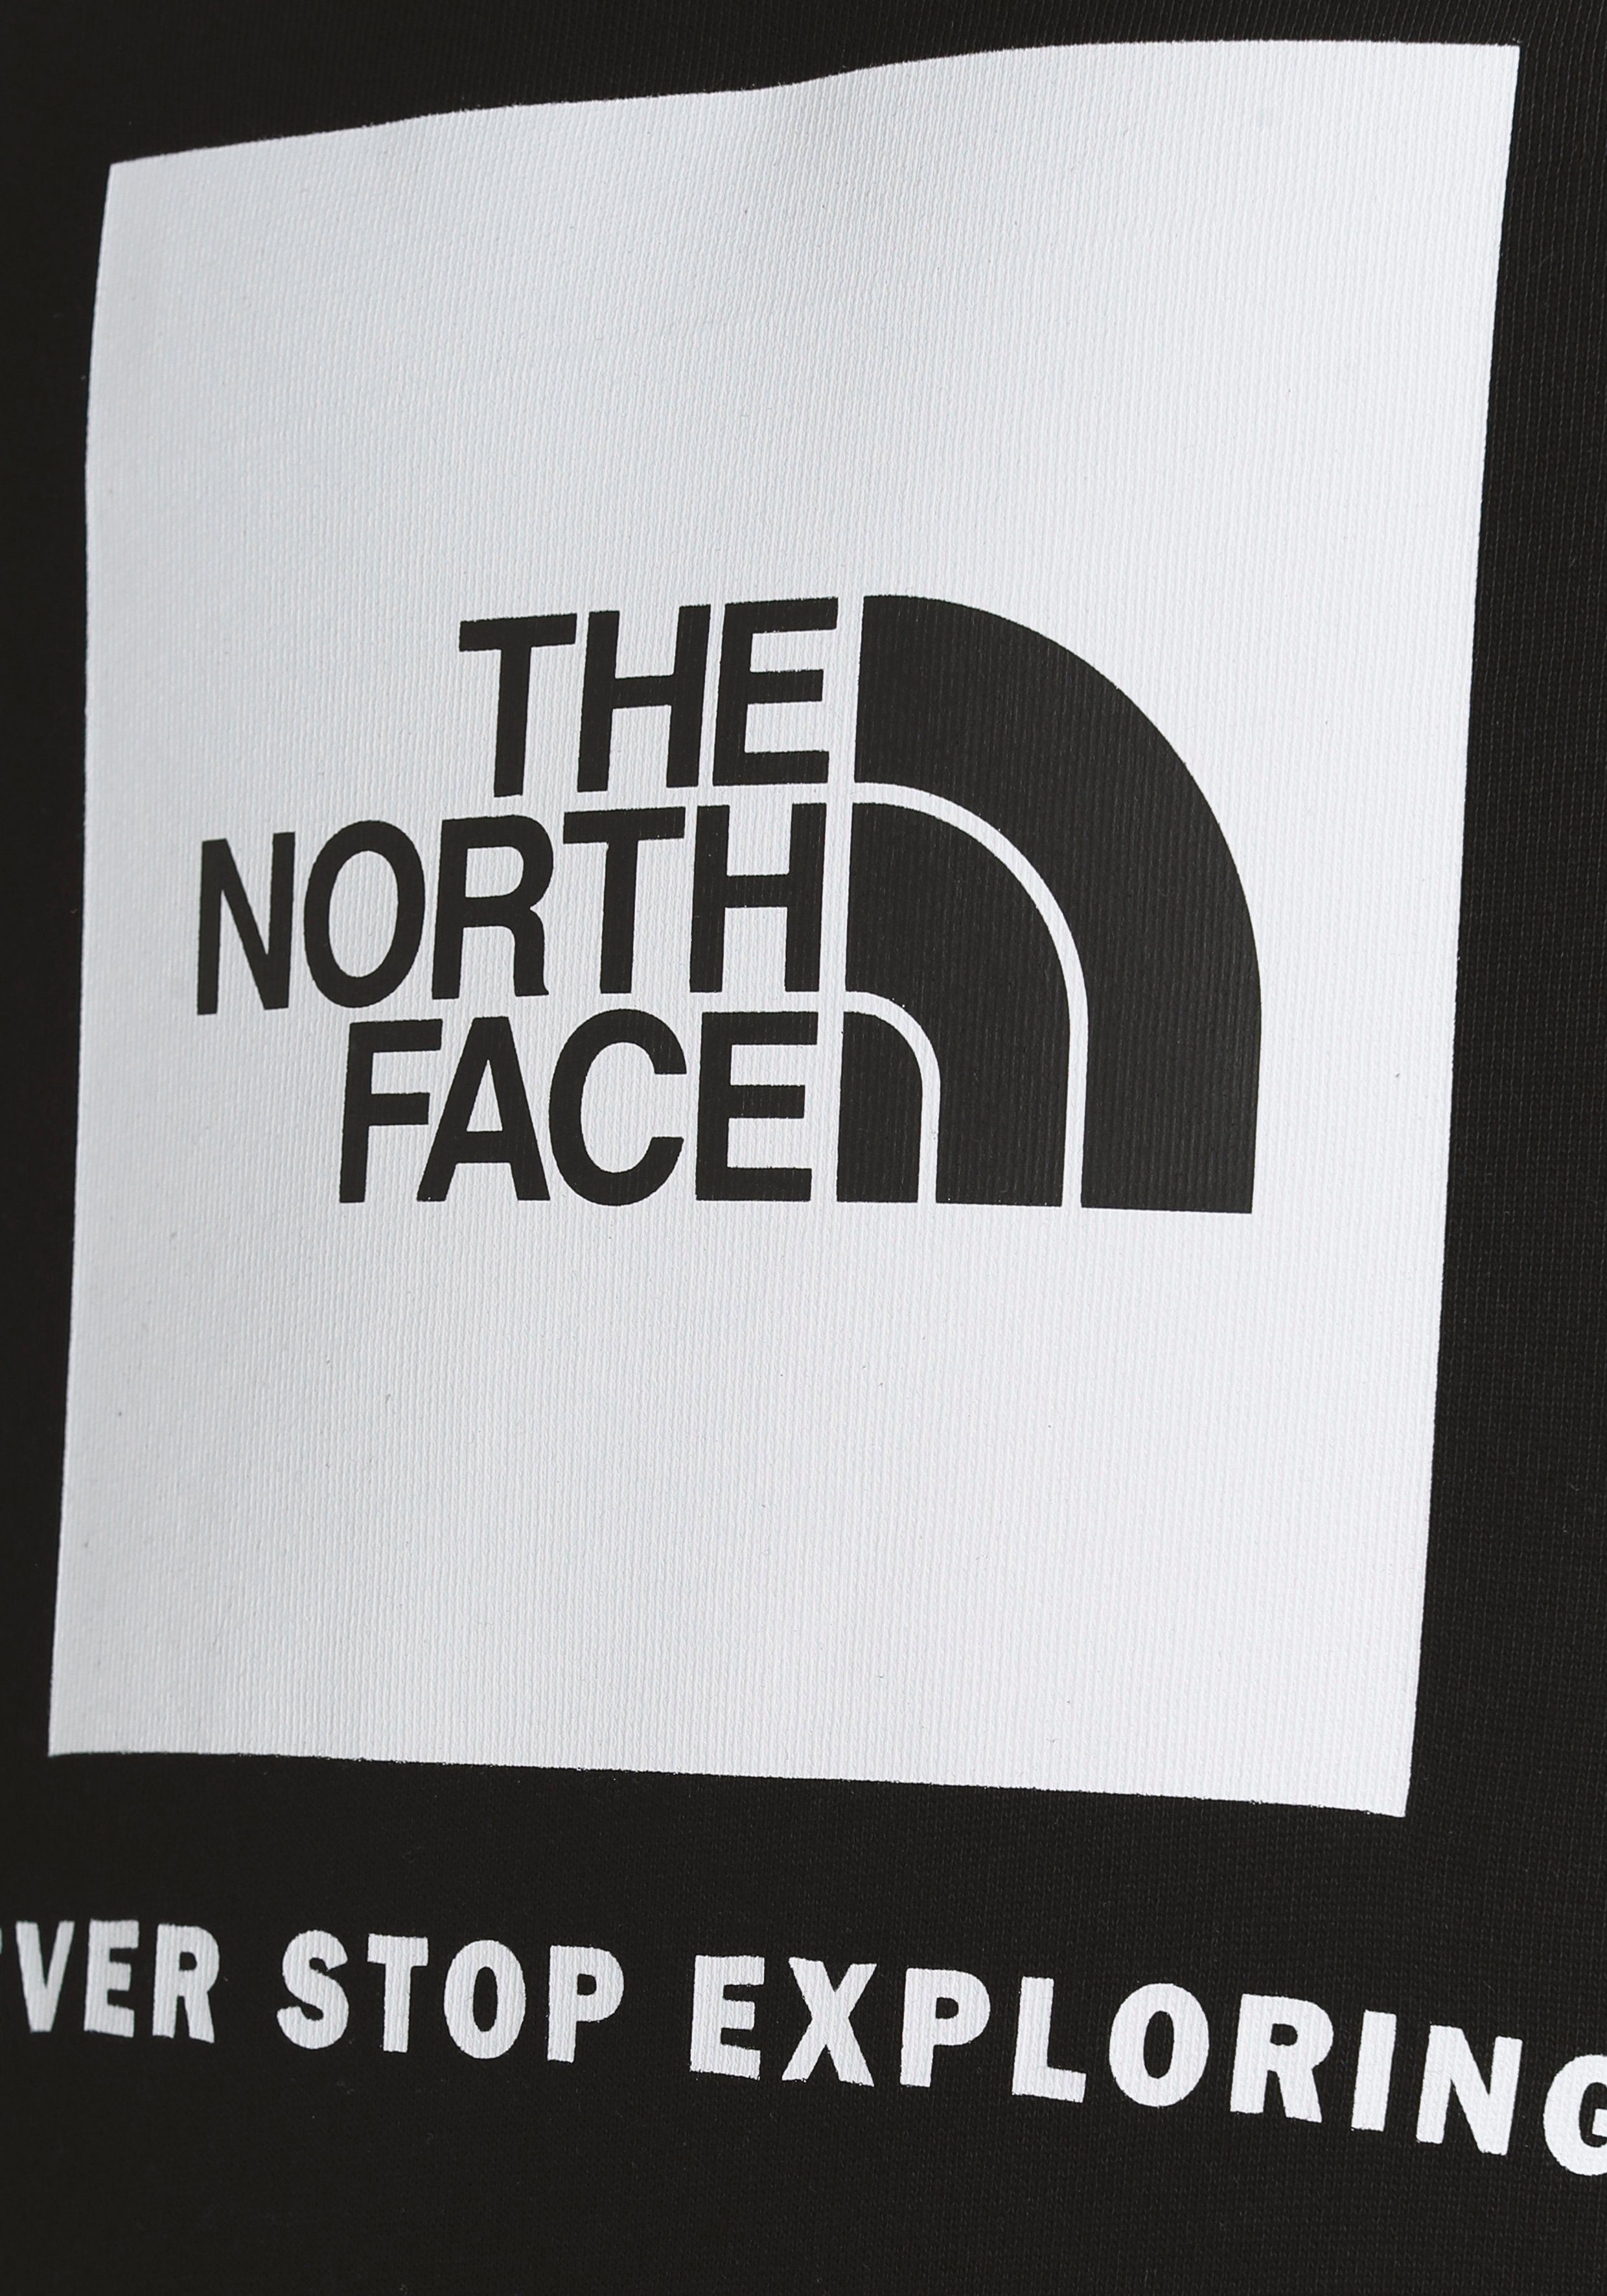 The North Face für TEENS Kinder Kapuzensweatshirt schwarz BOX